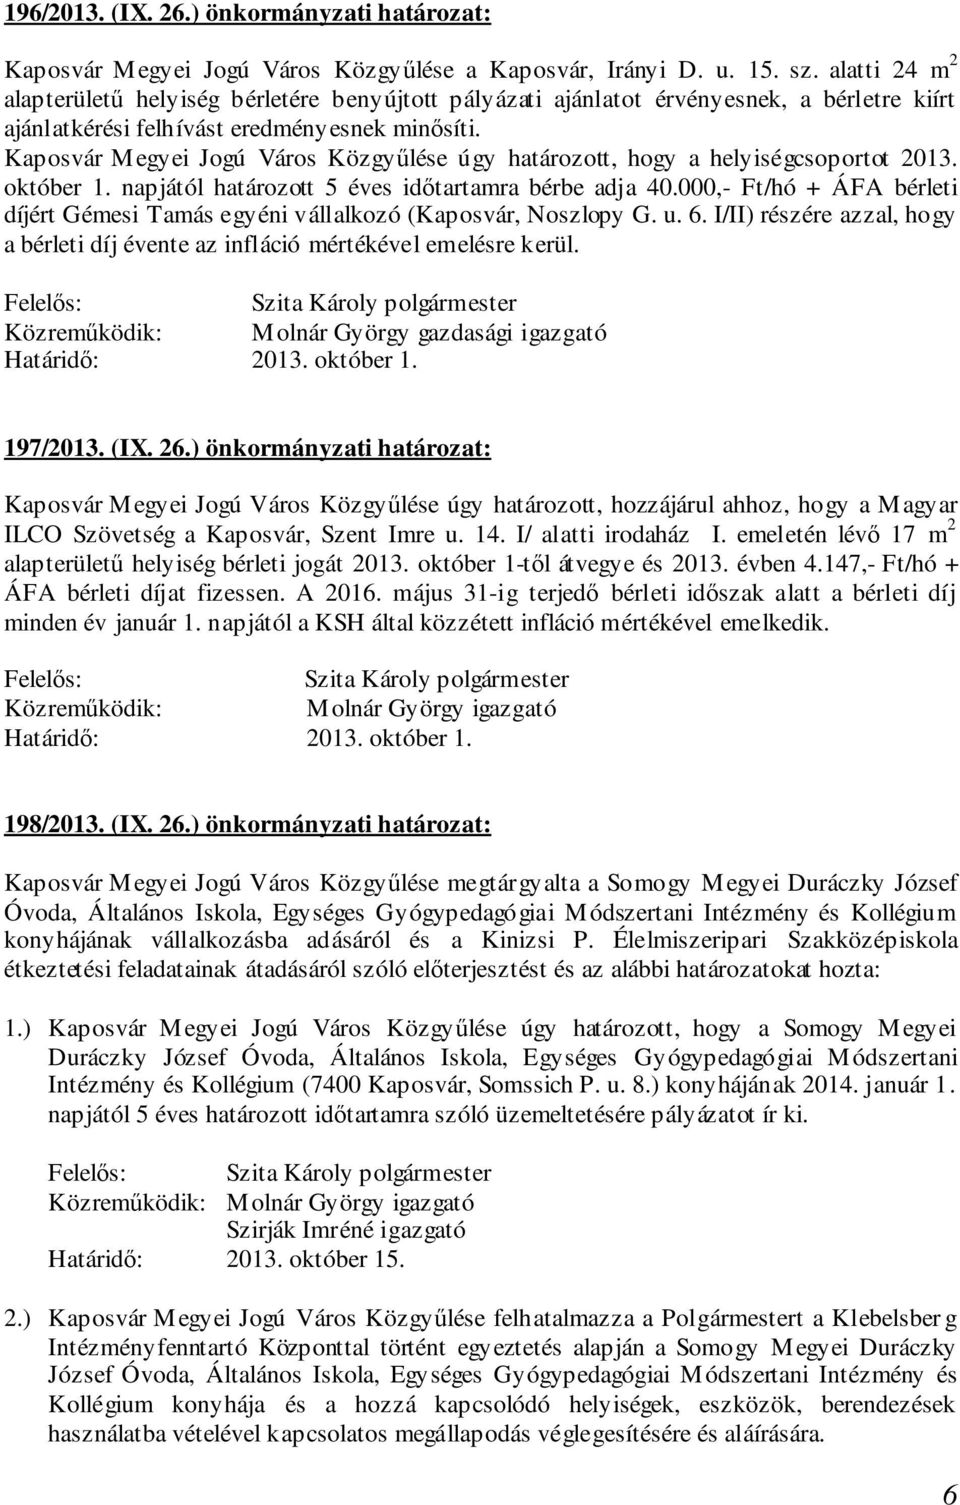 Kaposvár Megyei Jogú Város Közgyűlése úgy határozott, hogy a helyiségcsoportot 2013. október 1. napjától határozott 5 éves időtartamra bérbe adja 40.